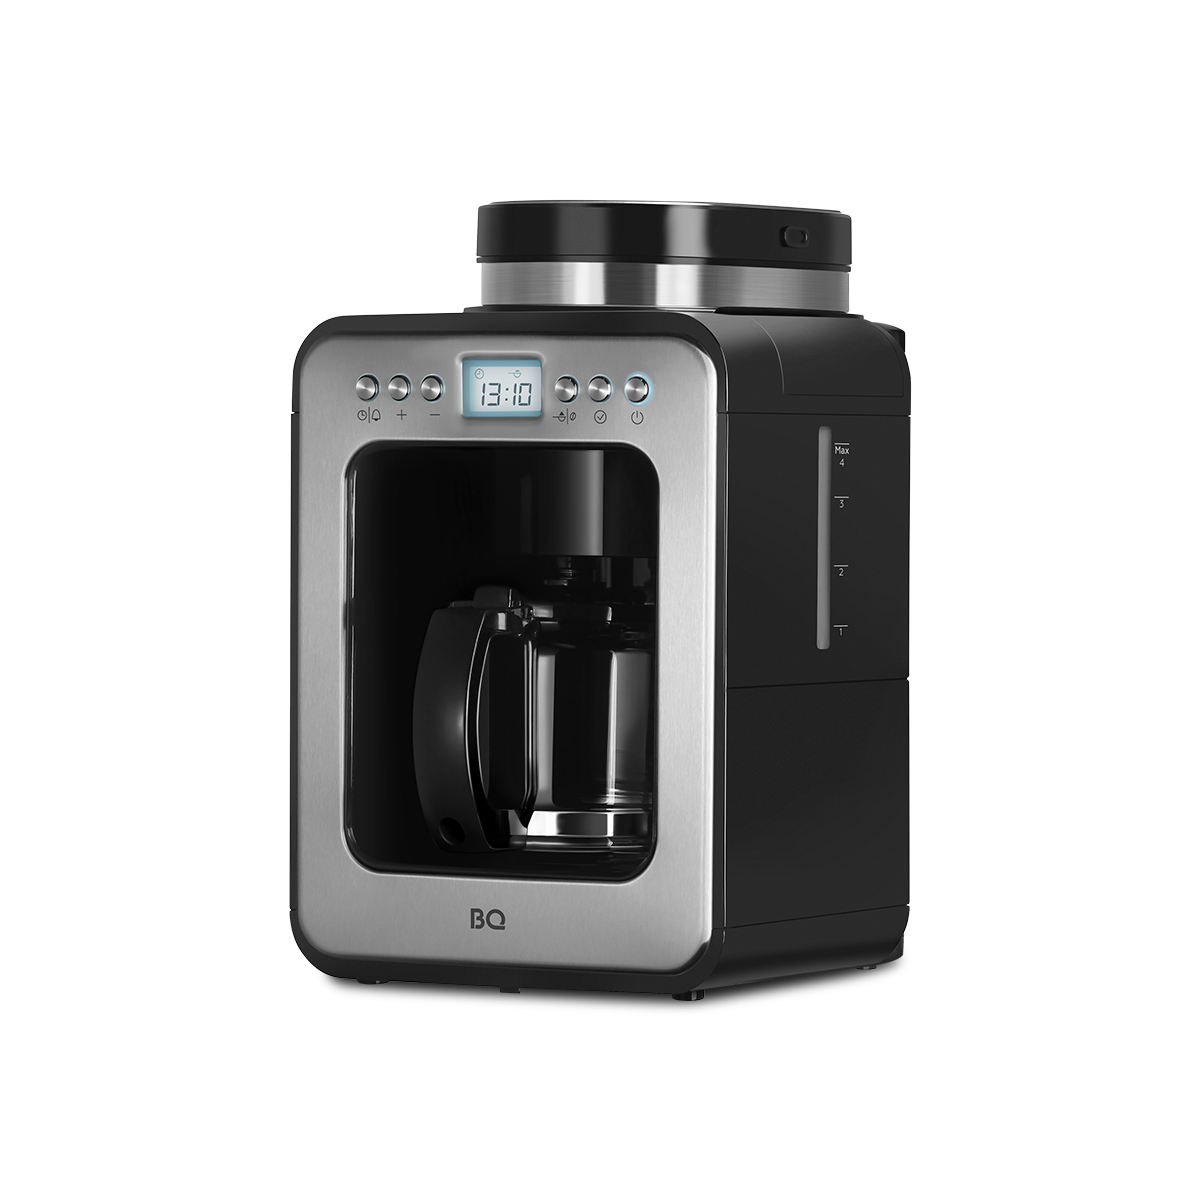 Кофеварка капельного типа BQ CM7001 серебристый, черный кофеварка hyundai hem 1310 800вт кремовый серебристый